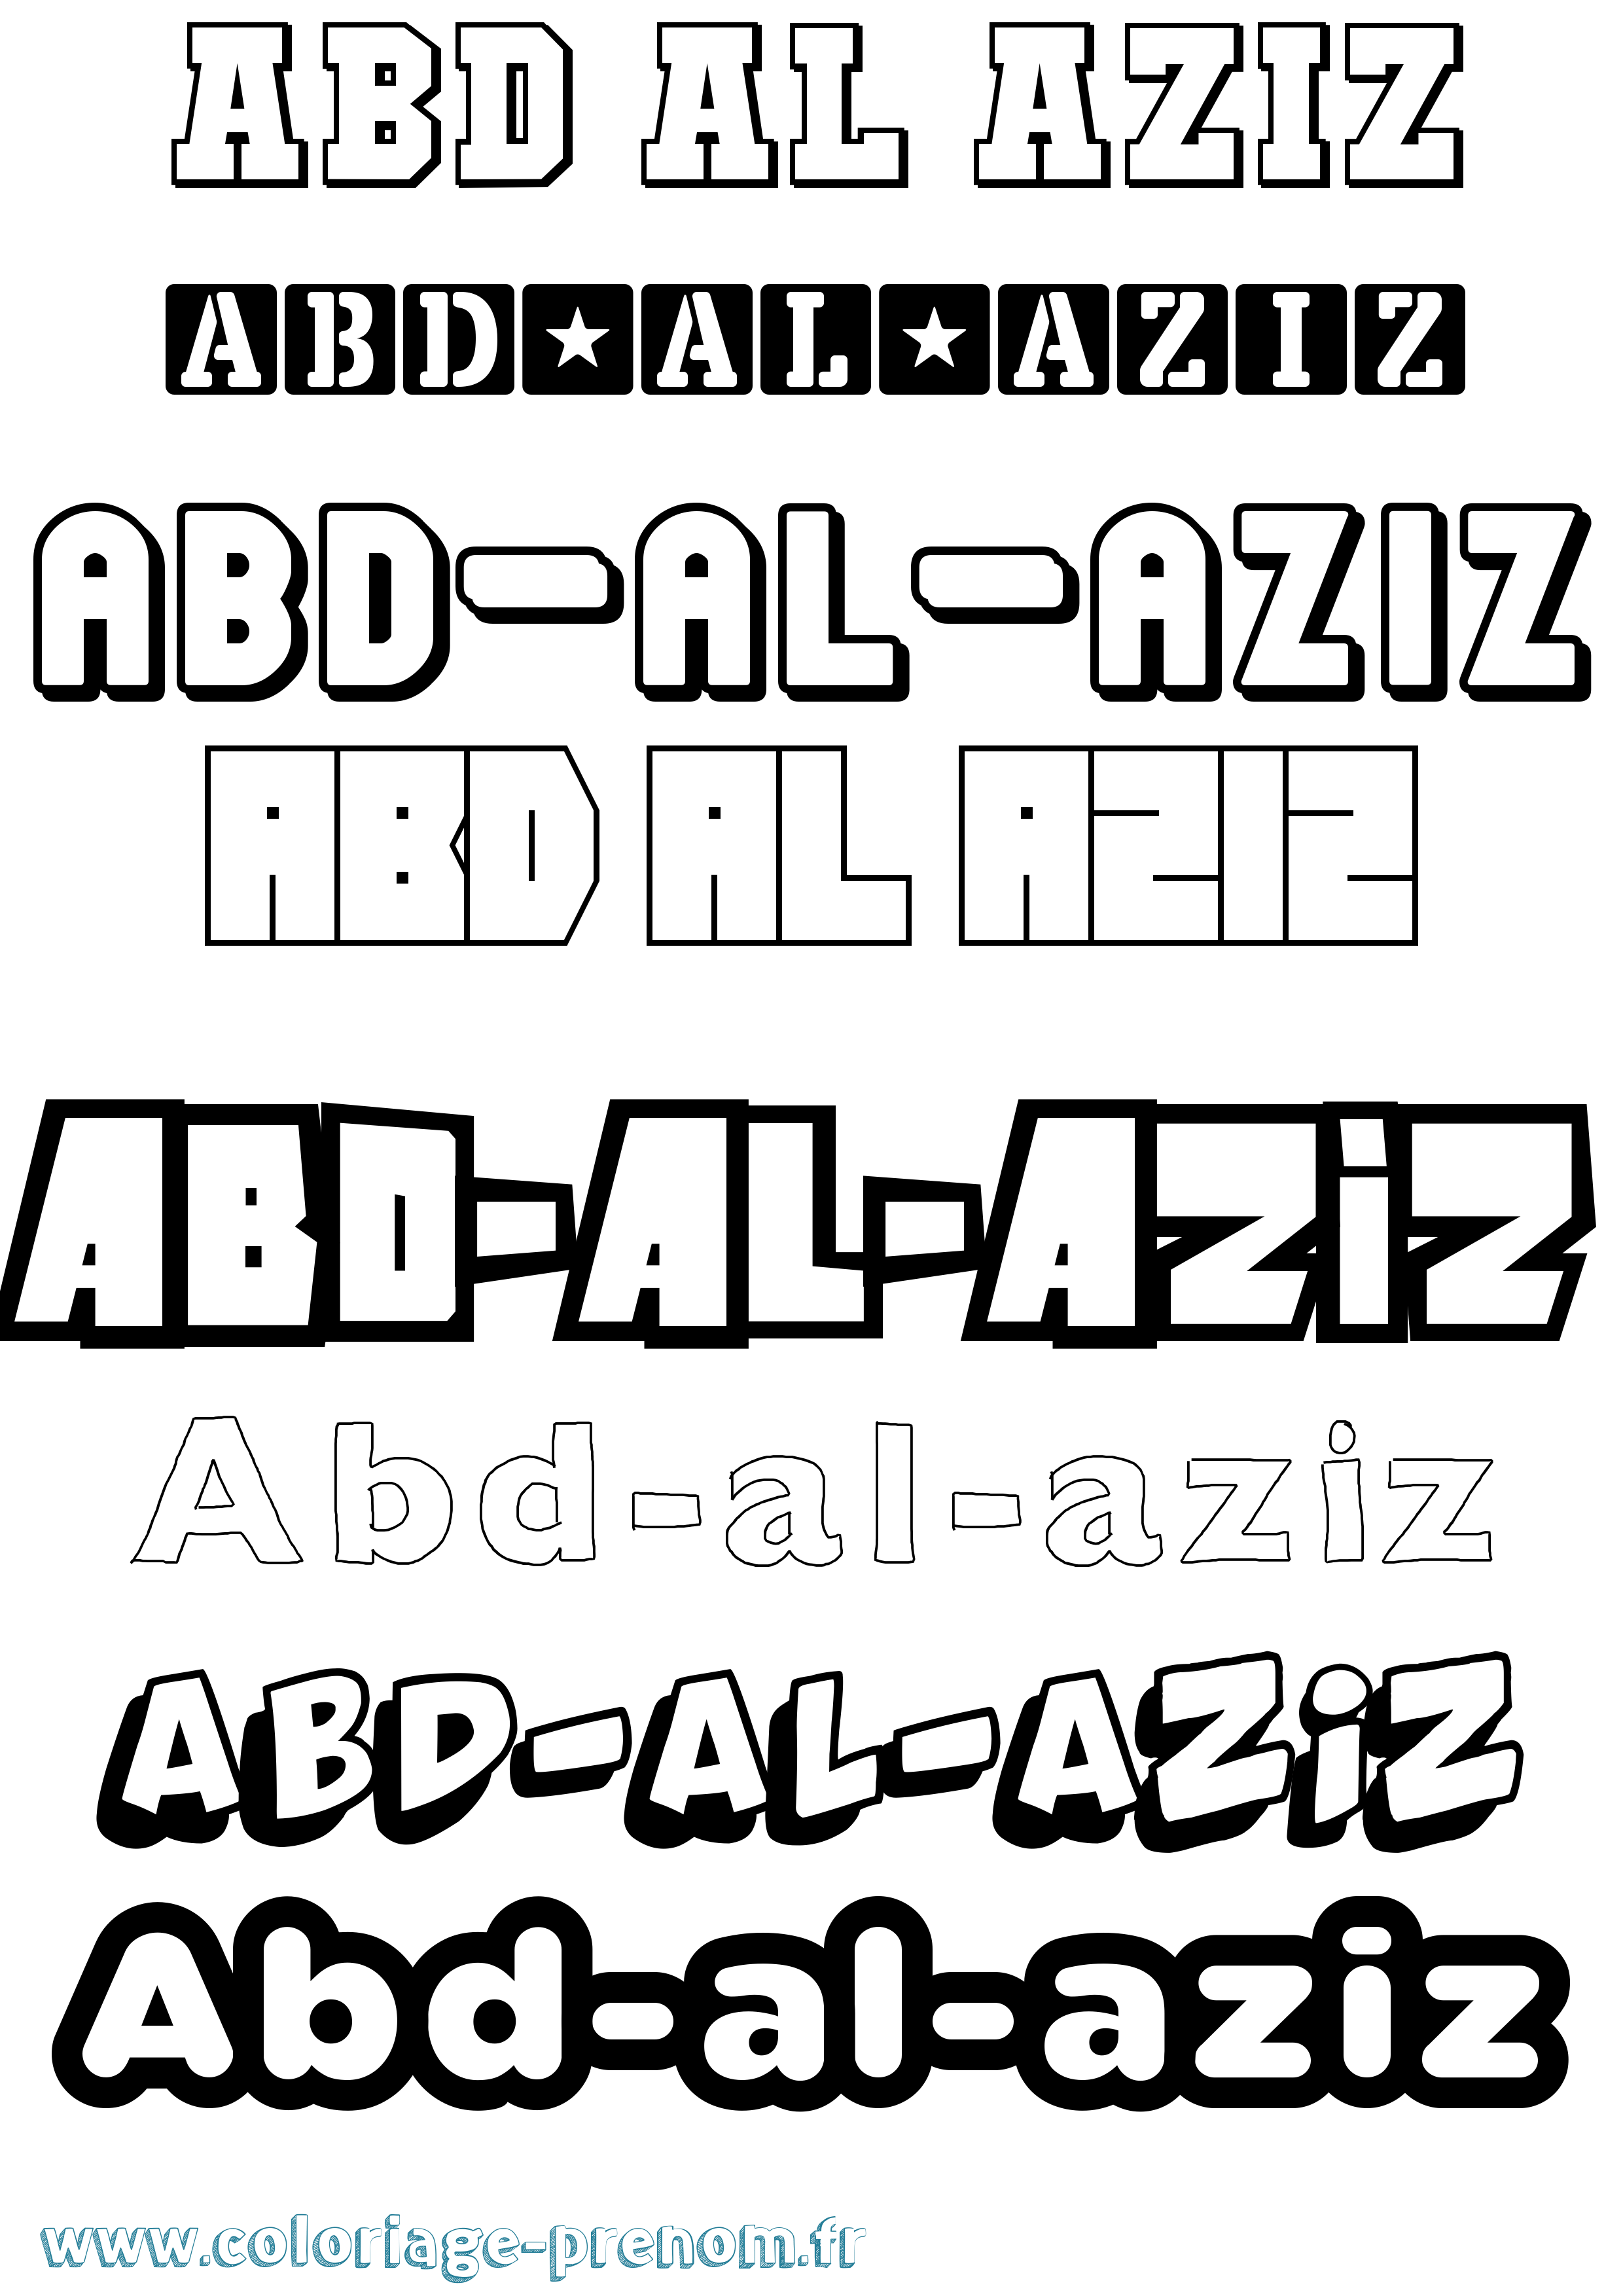 Coloriage prénom Abd-Al-Aziz Simple